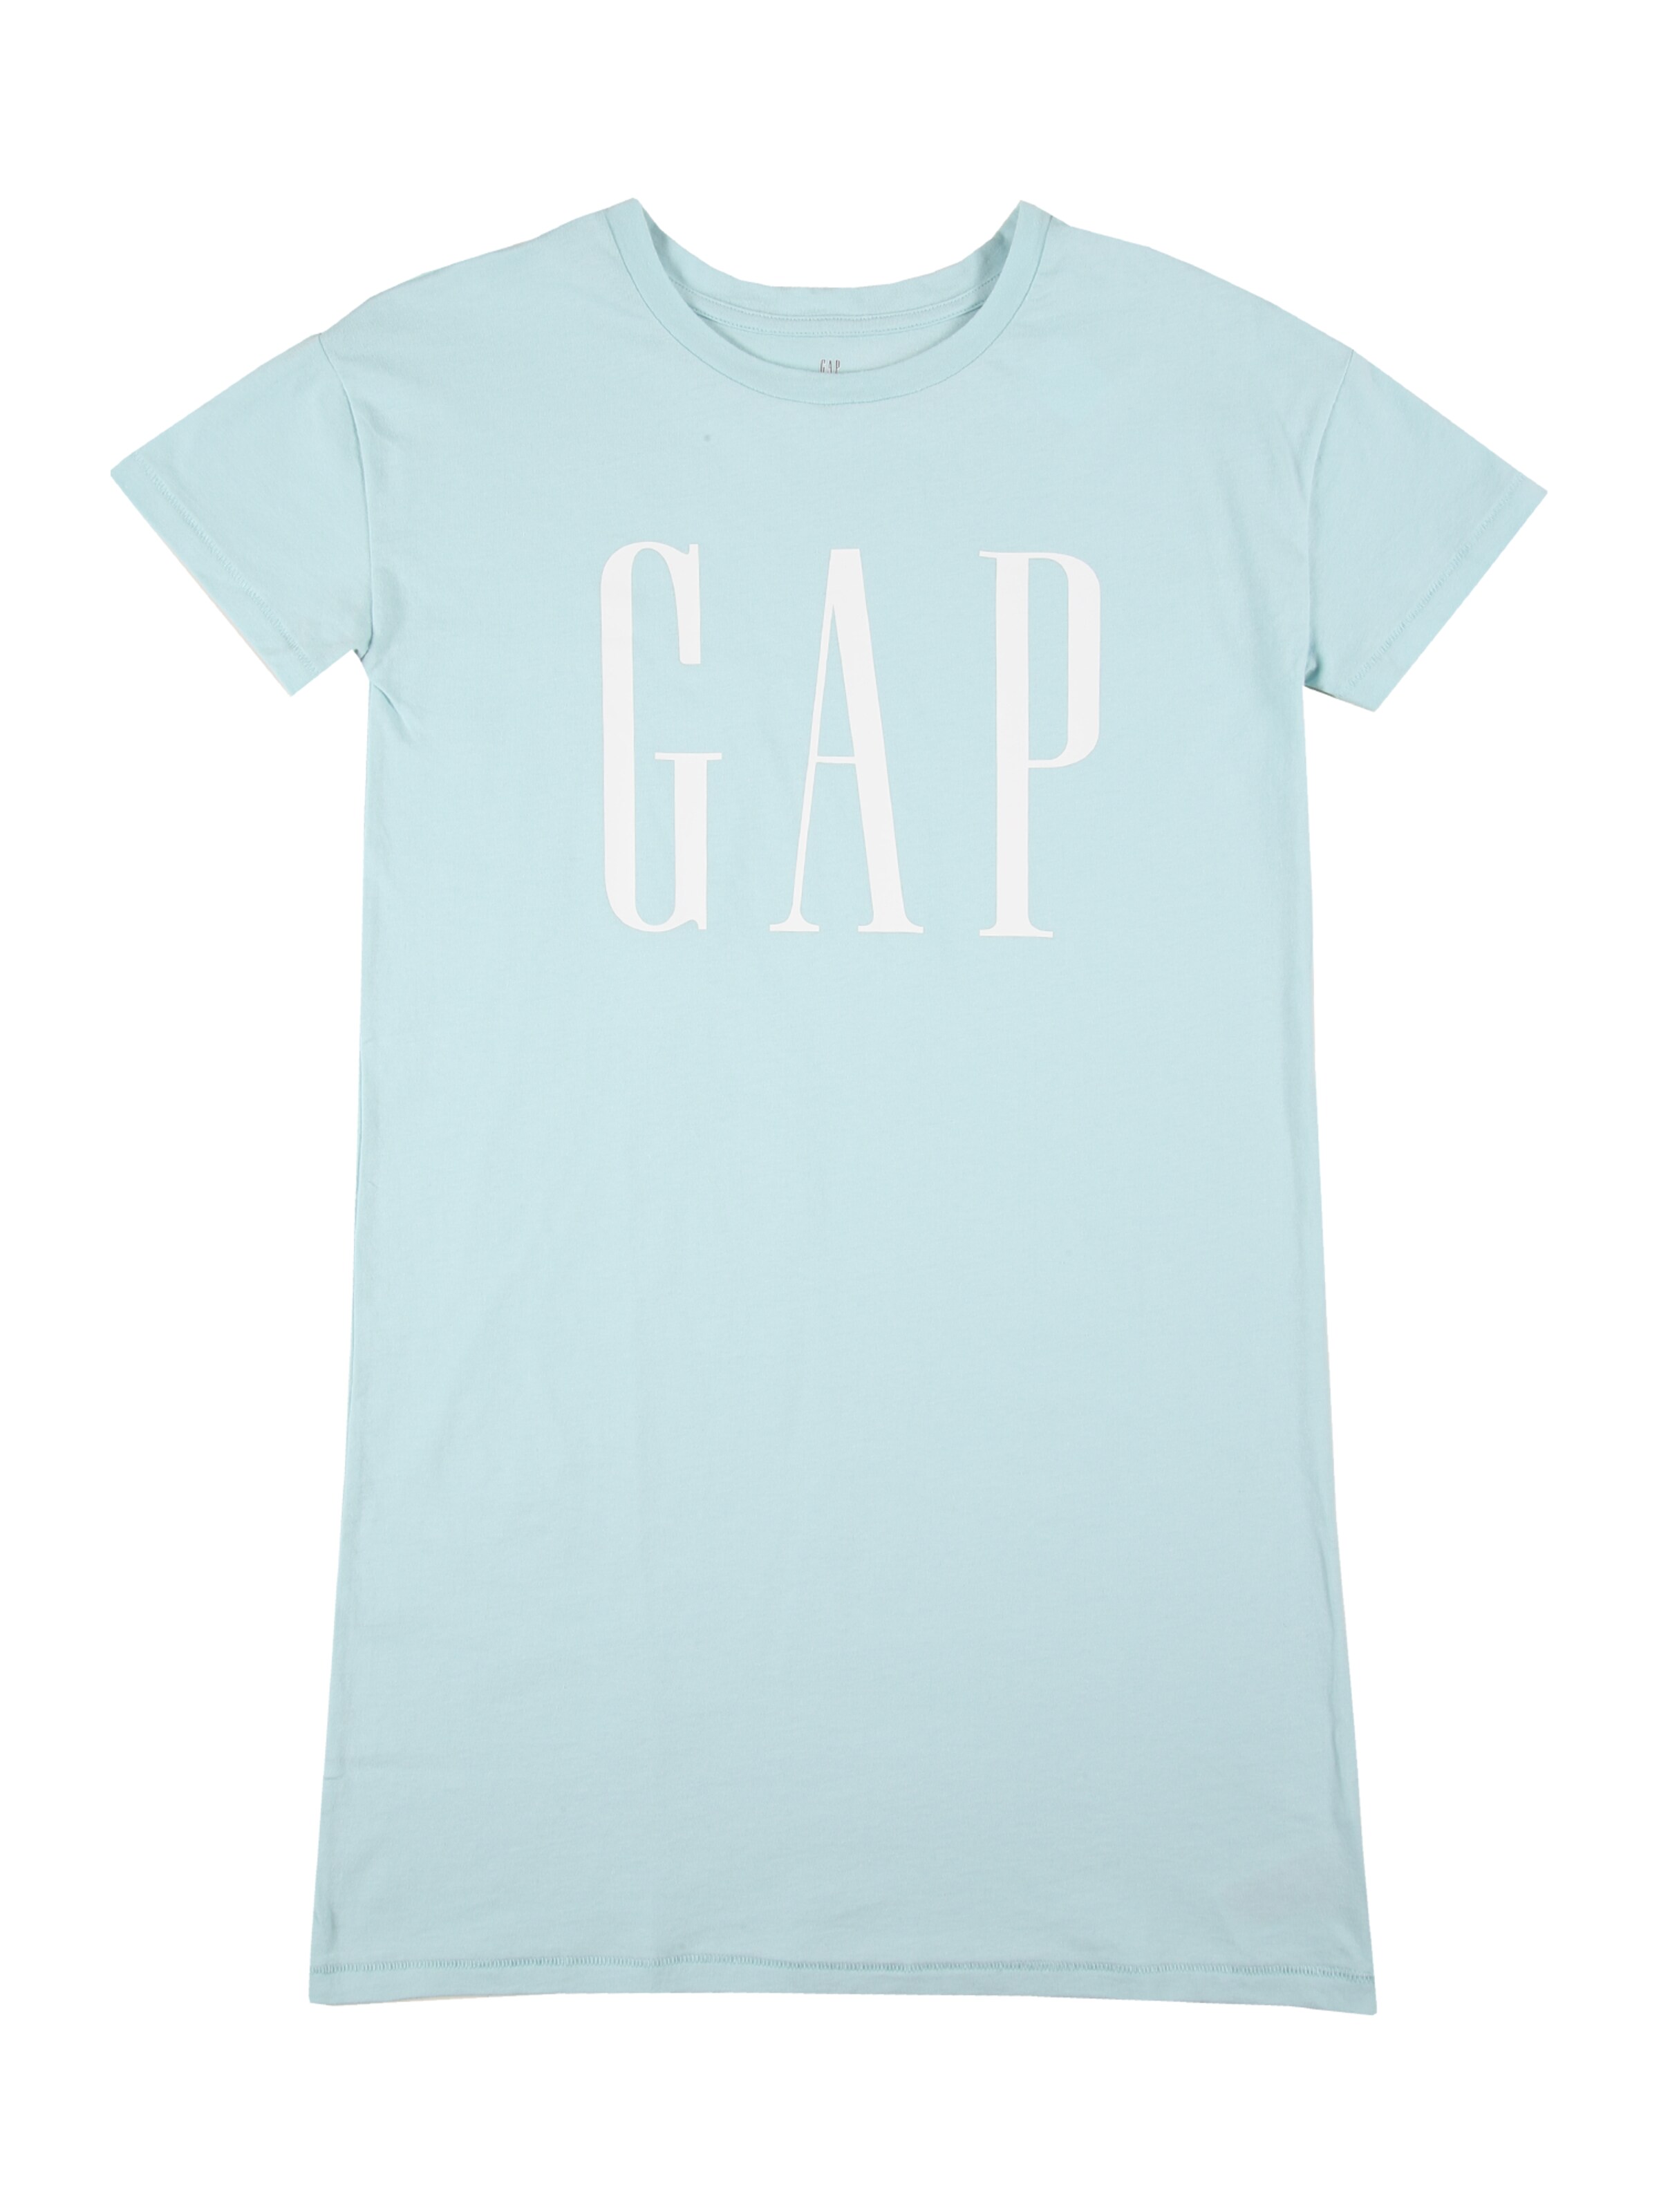 Kleid GAP 5-6 Jahre blau Kleider Gap Kinder Kinder Mädchen Gap Kleidung Gap Kinder Kleider Gap Kinder 